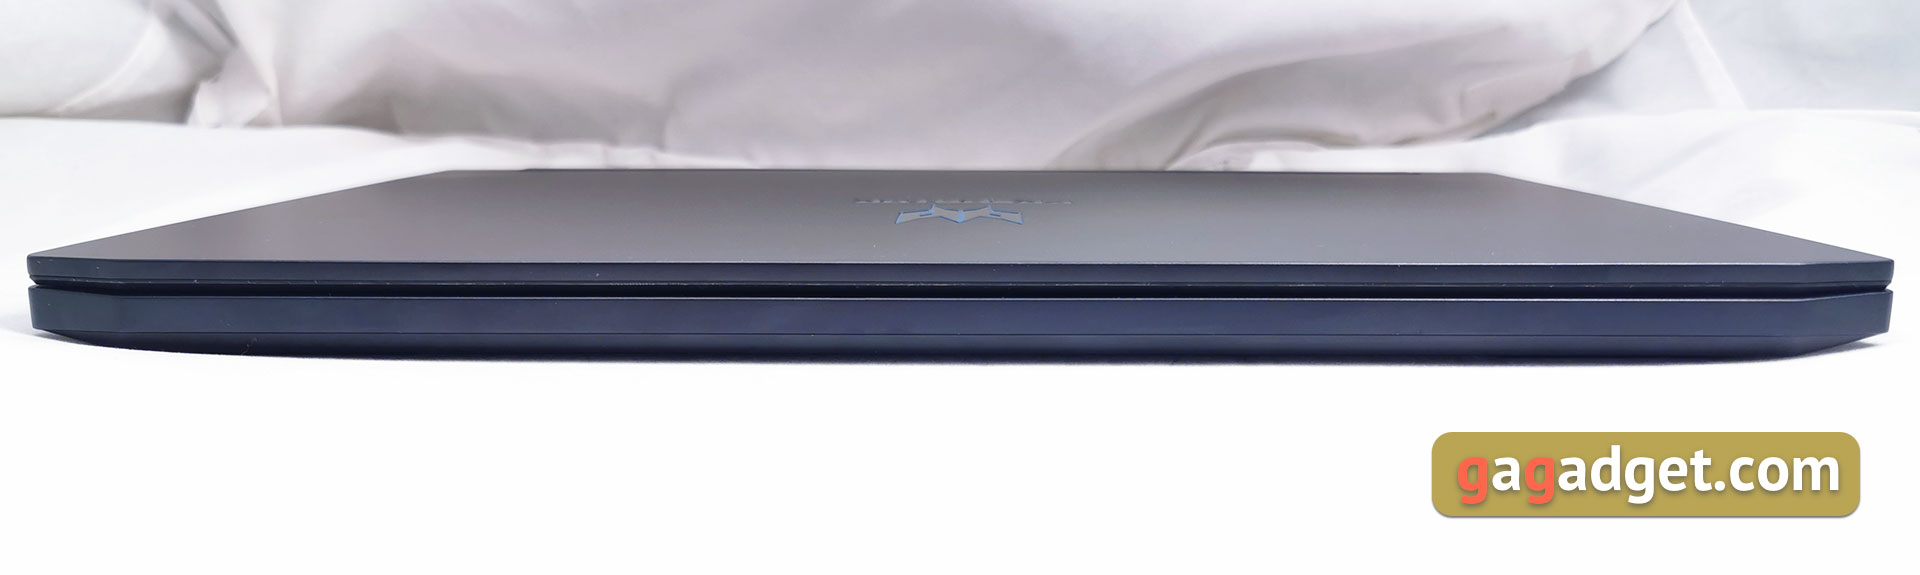 Огляд Acer Predator Triton 500: ігровий ноутбук із RTX 2080 Max-Q у компактному легкому корпусі-8